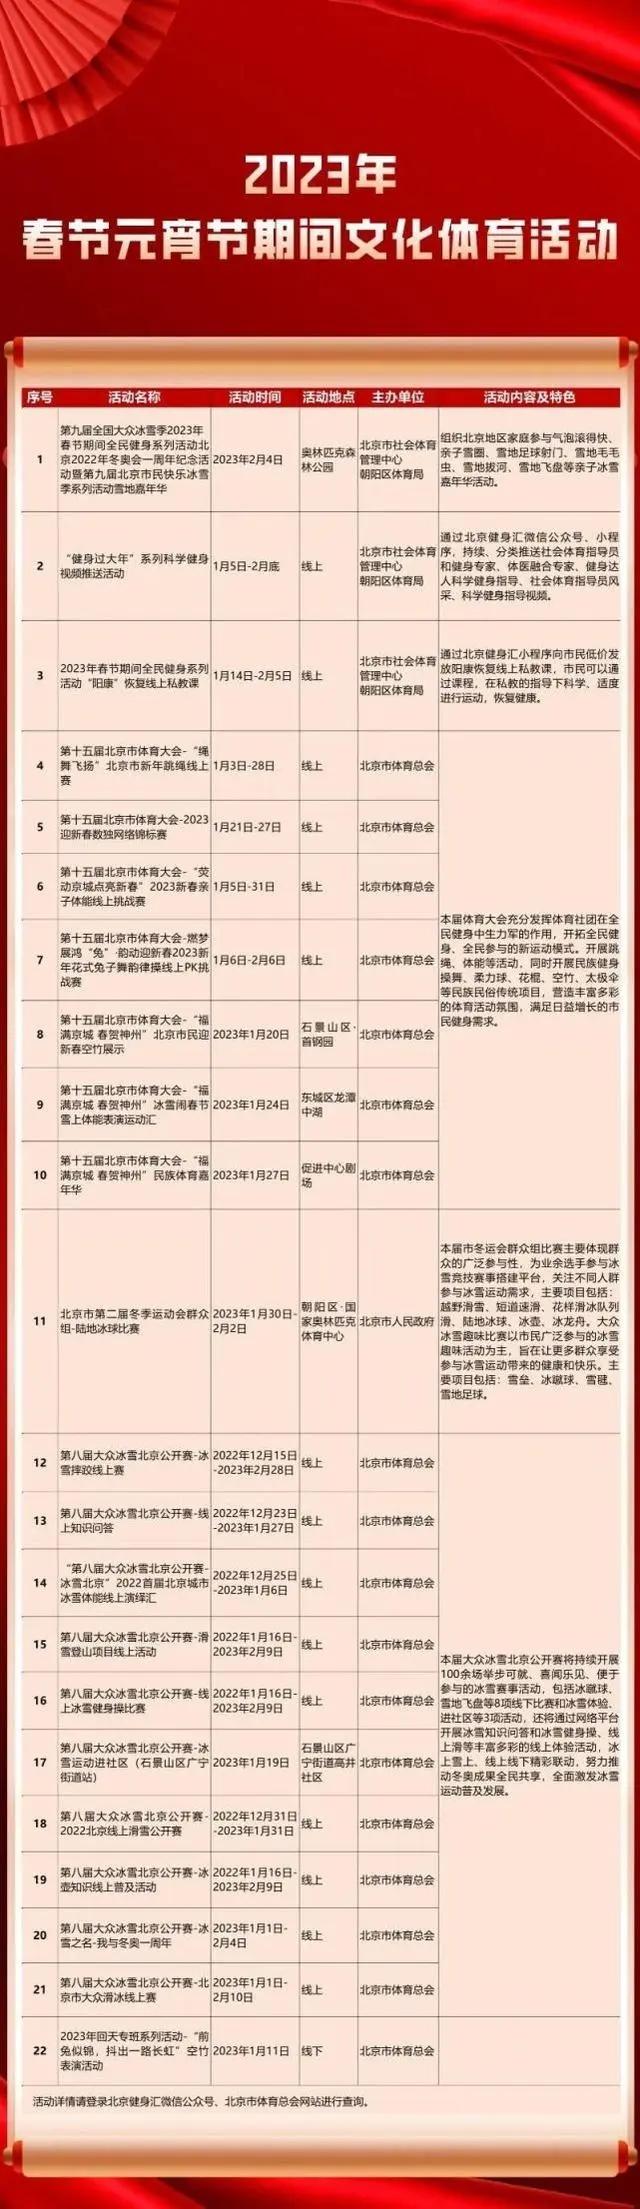 2023北京春节元宵节文化体育活动一览表